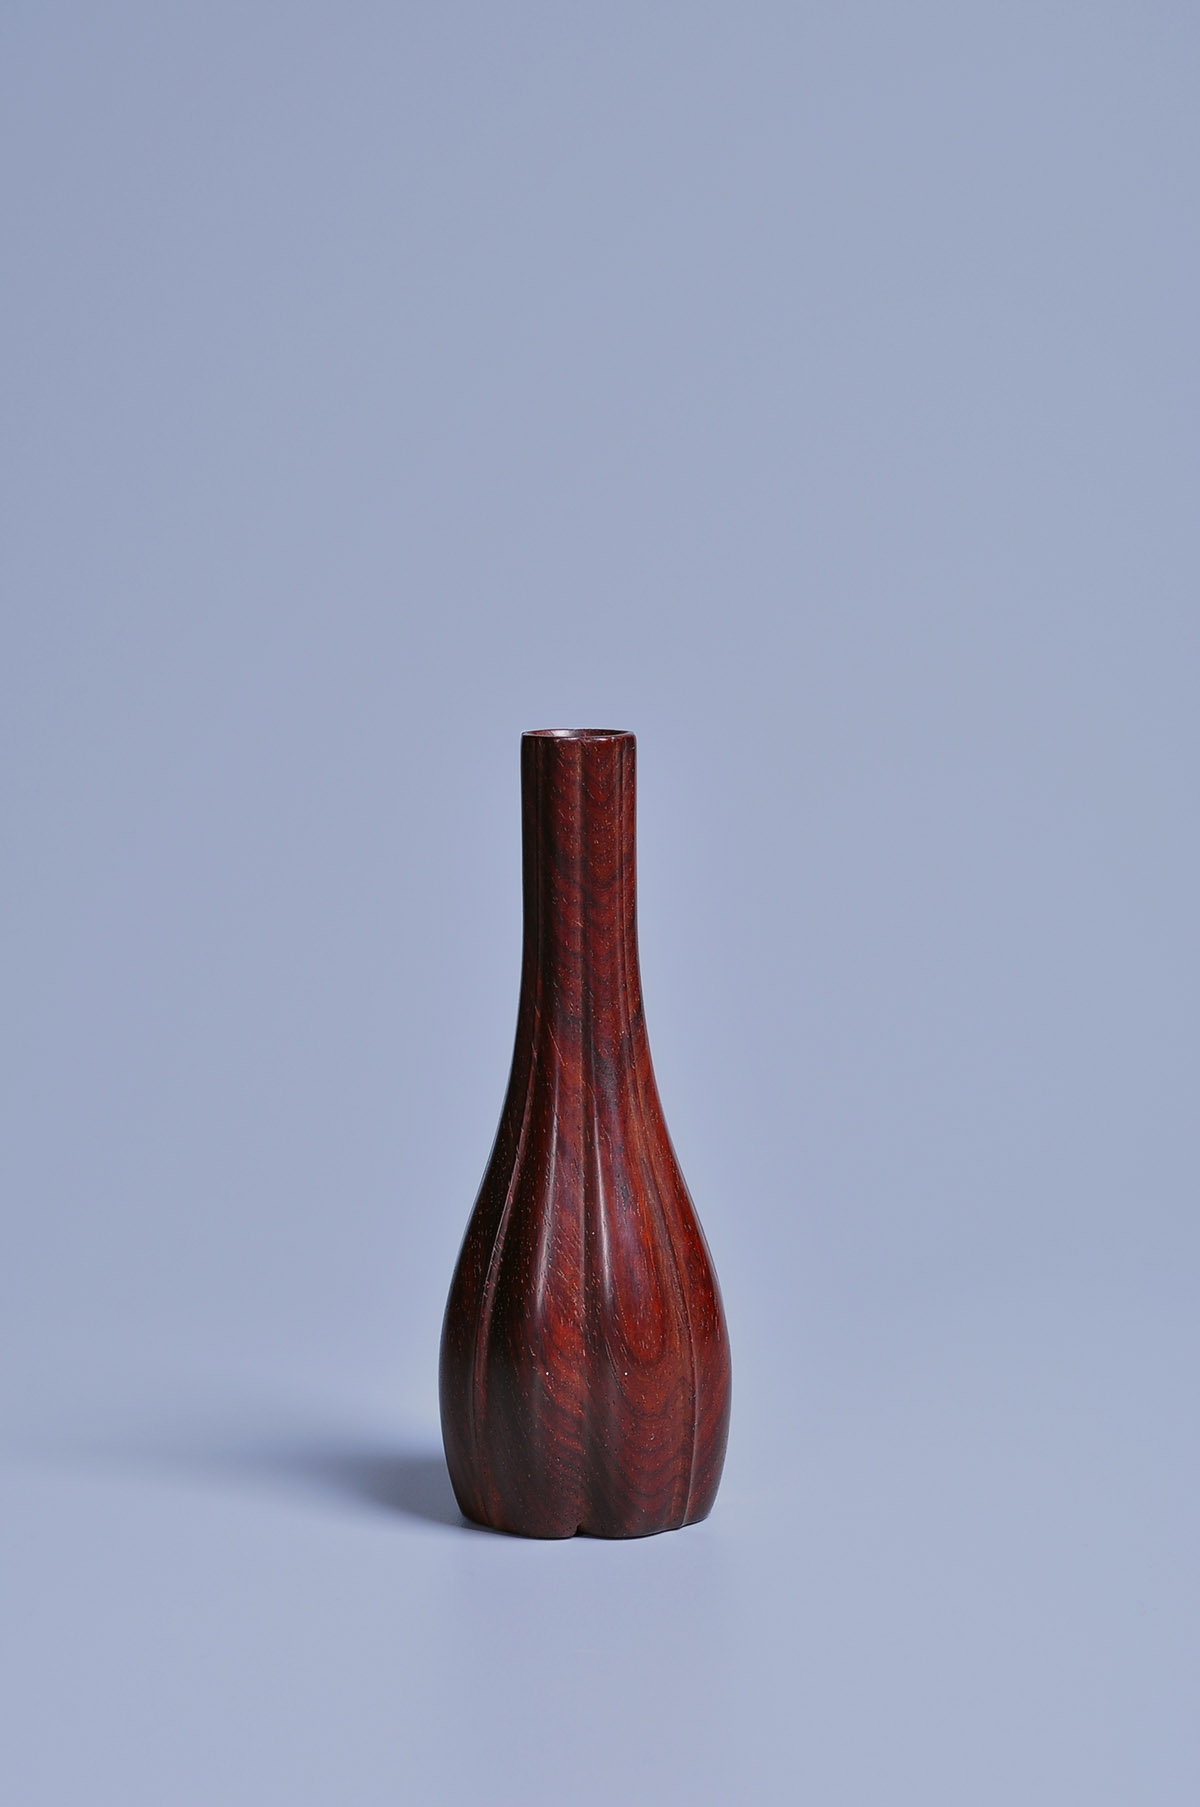 紫檀葵形箸瓶 - 紫檀 箸瓶 香具 香道具